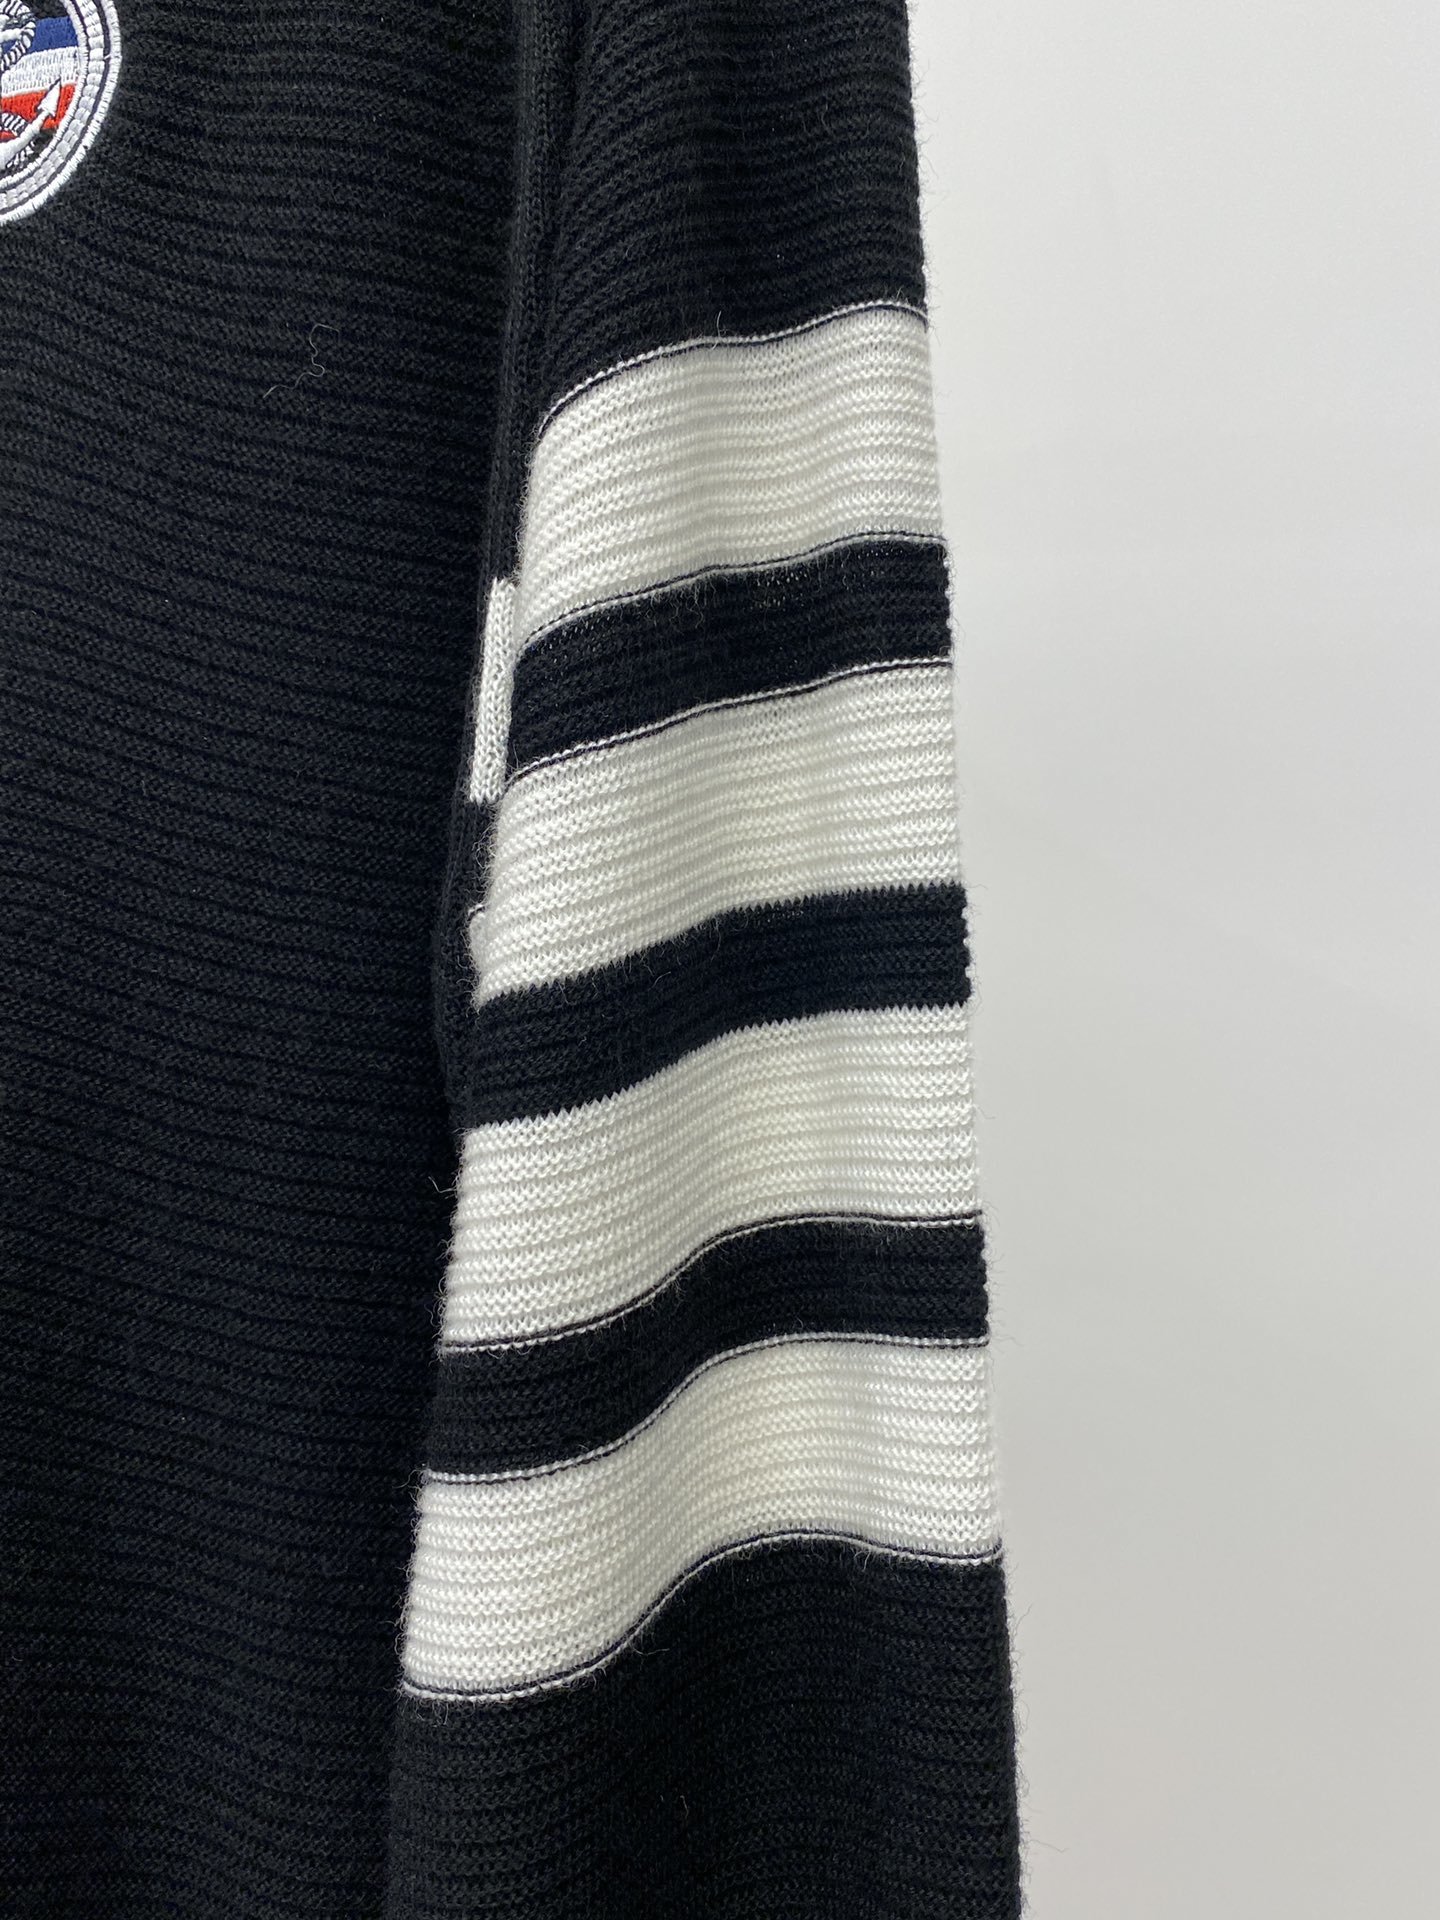 TB2023新品羊毛衣具有手感细腻柔软可直接与肌肤接触让暖心的纱线变化出细腻的质感顶级工艺极具特色出彩款